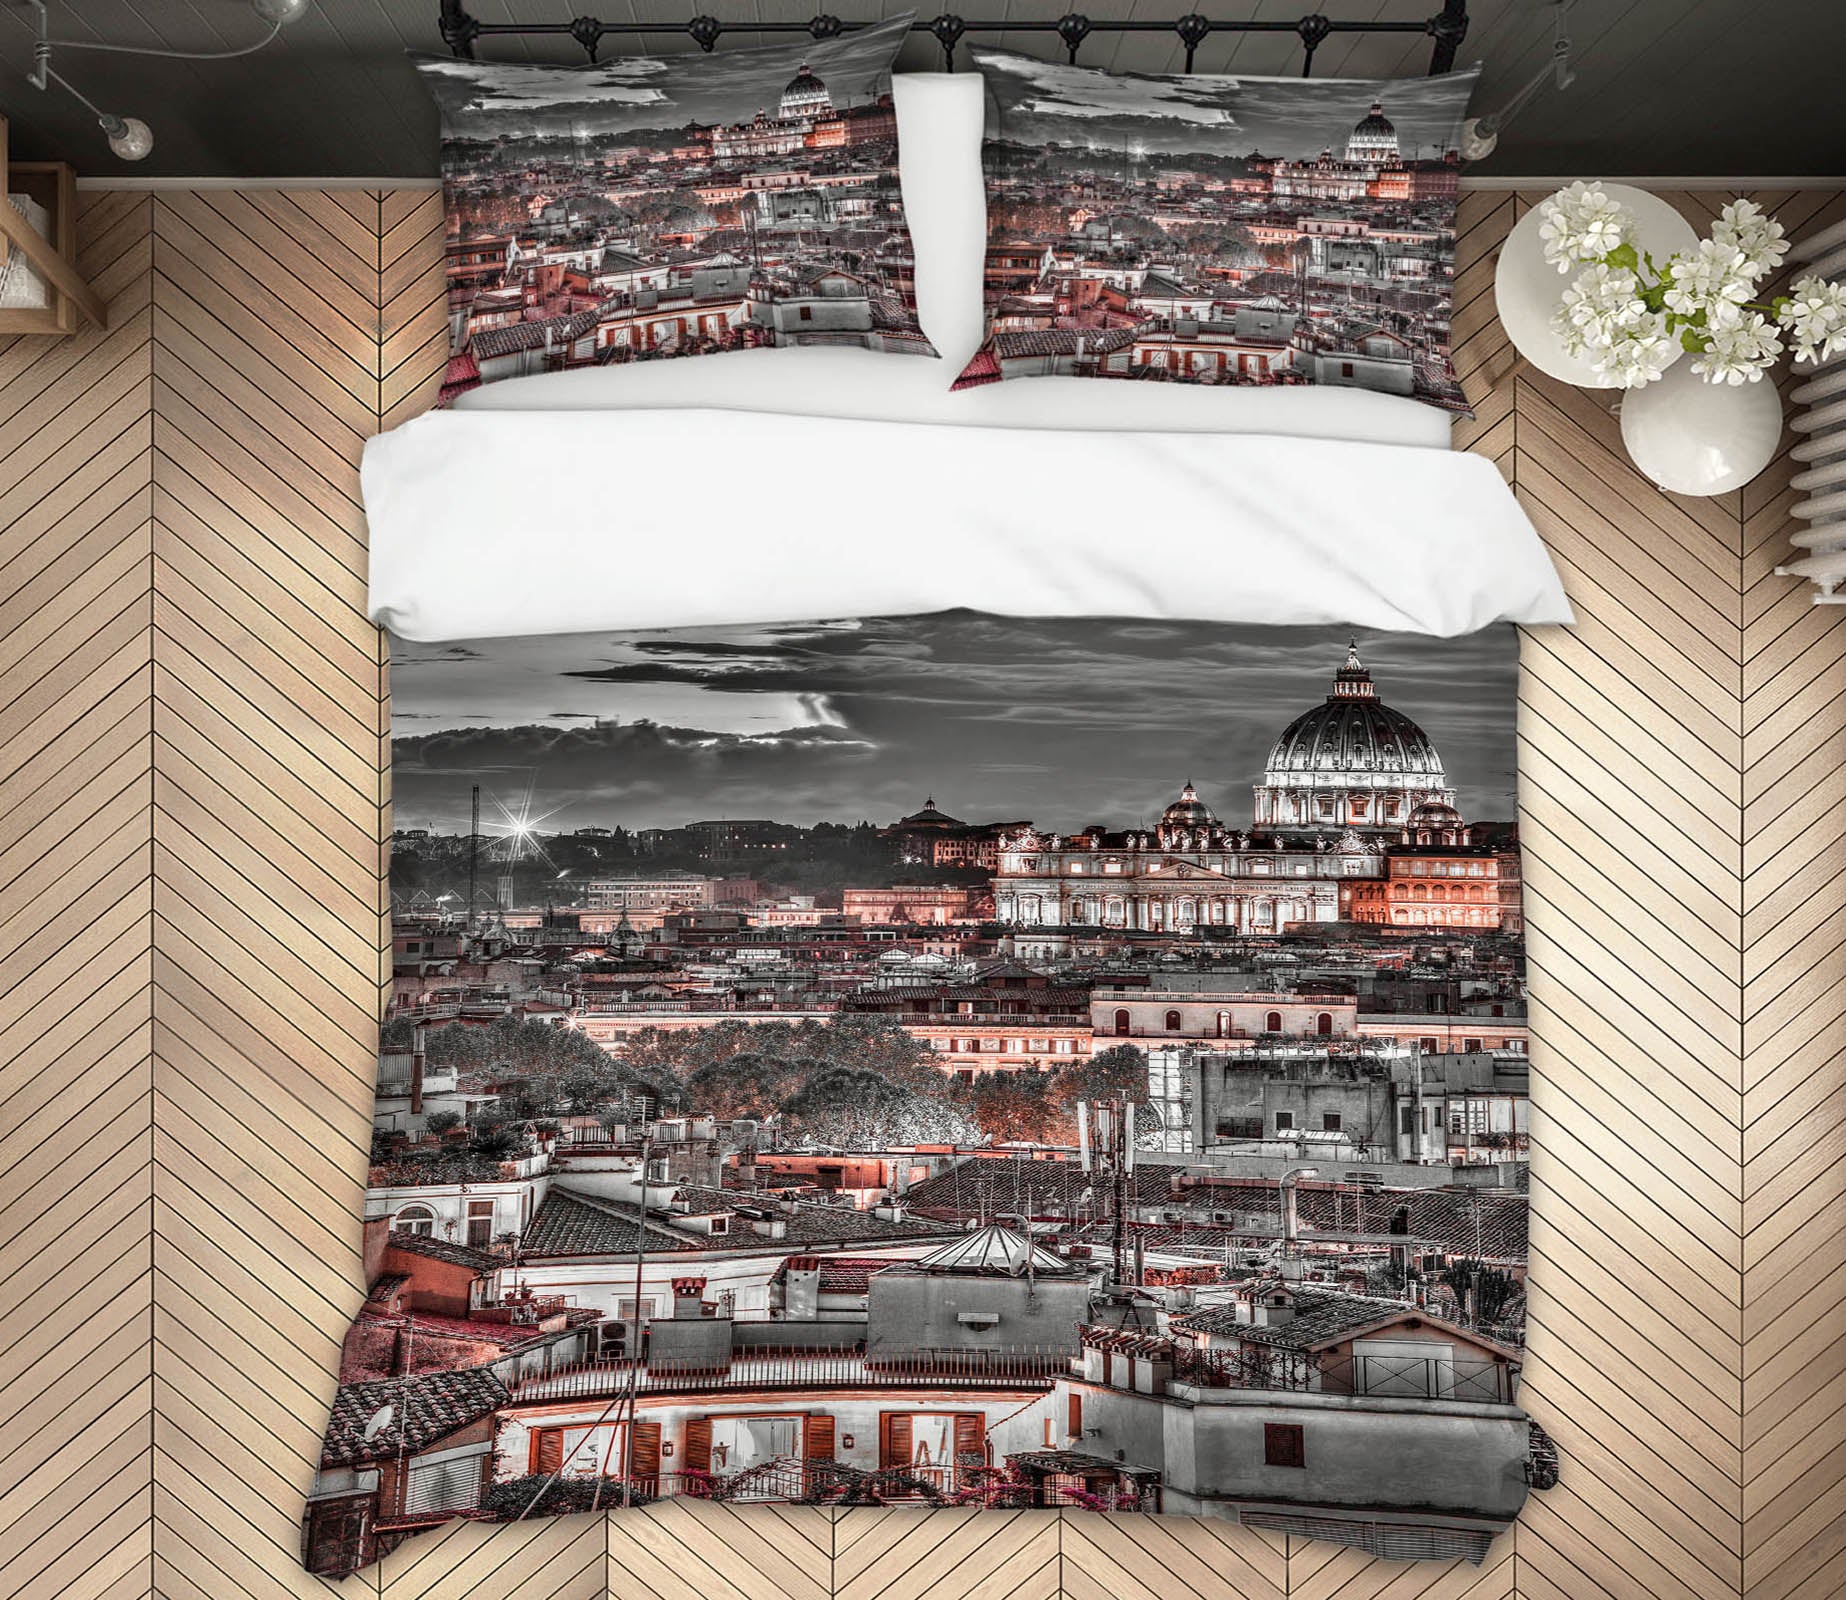 3D Light Building 8620 Assaf Frank Bedding Bed Pillowcases Quilt